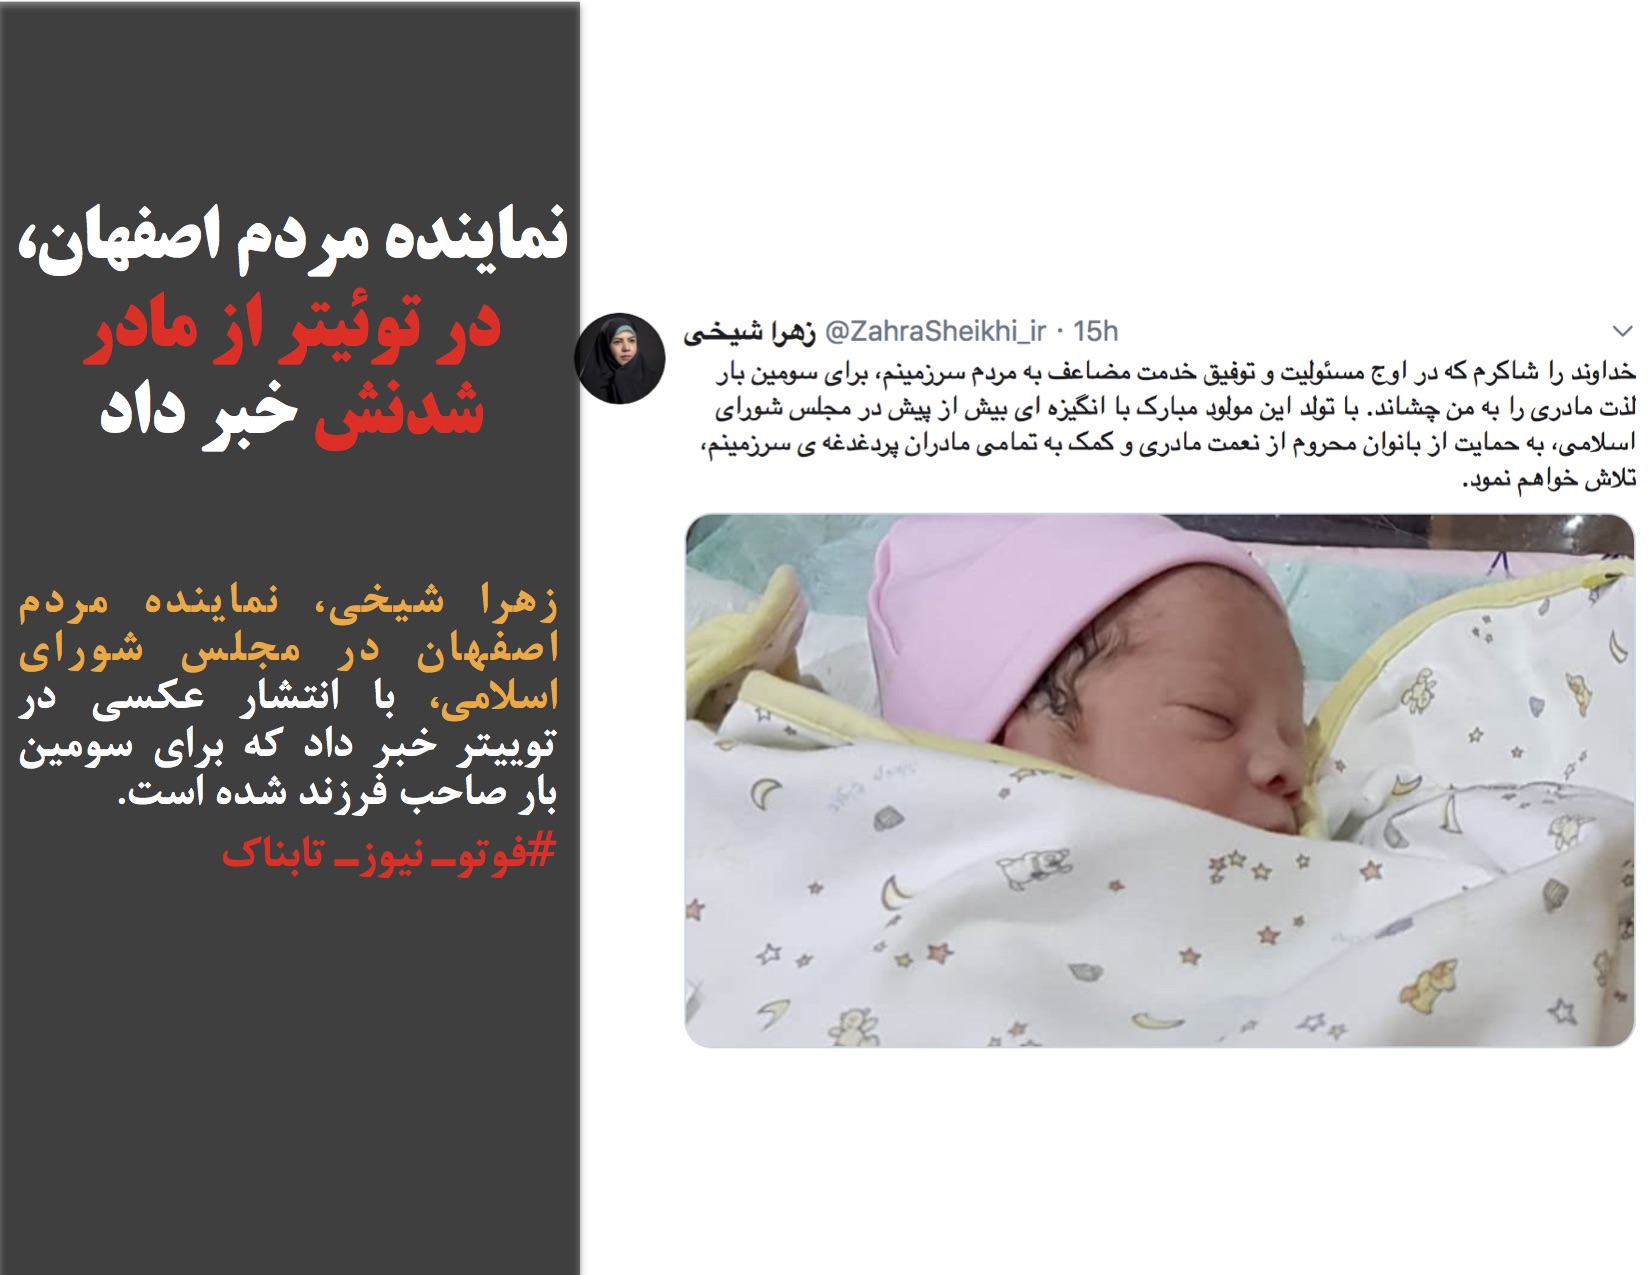 نماینده مردم اصفهان، در تویئتر از مادر شدنش خبر داد